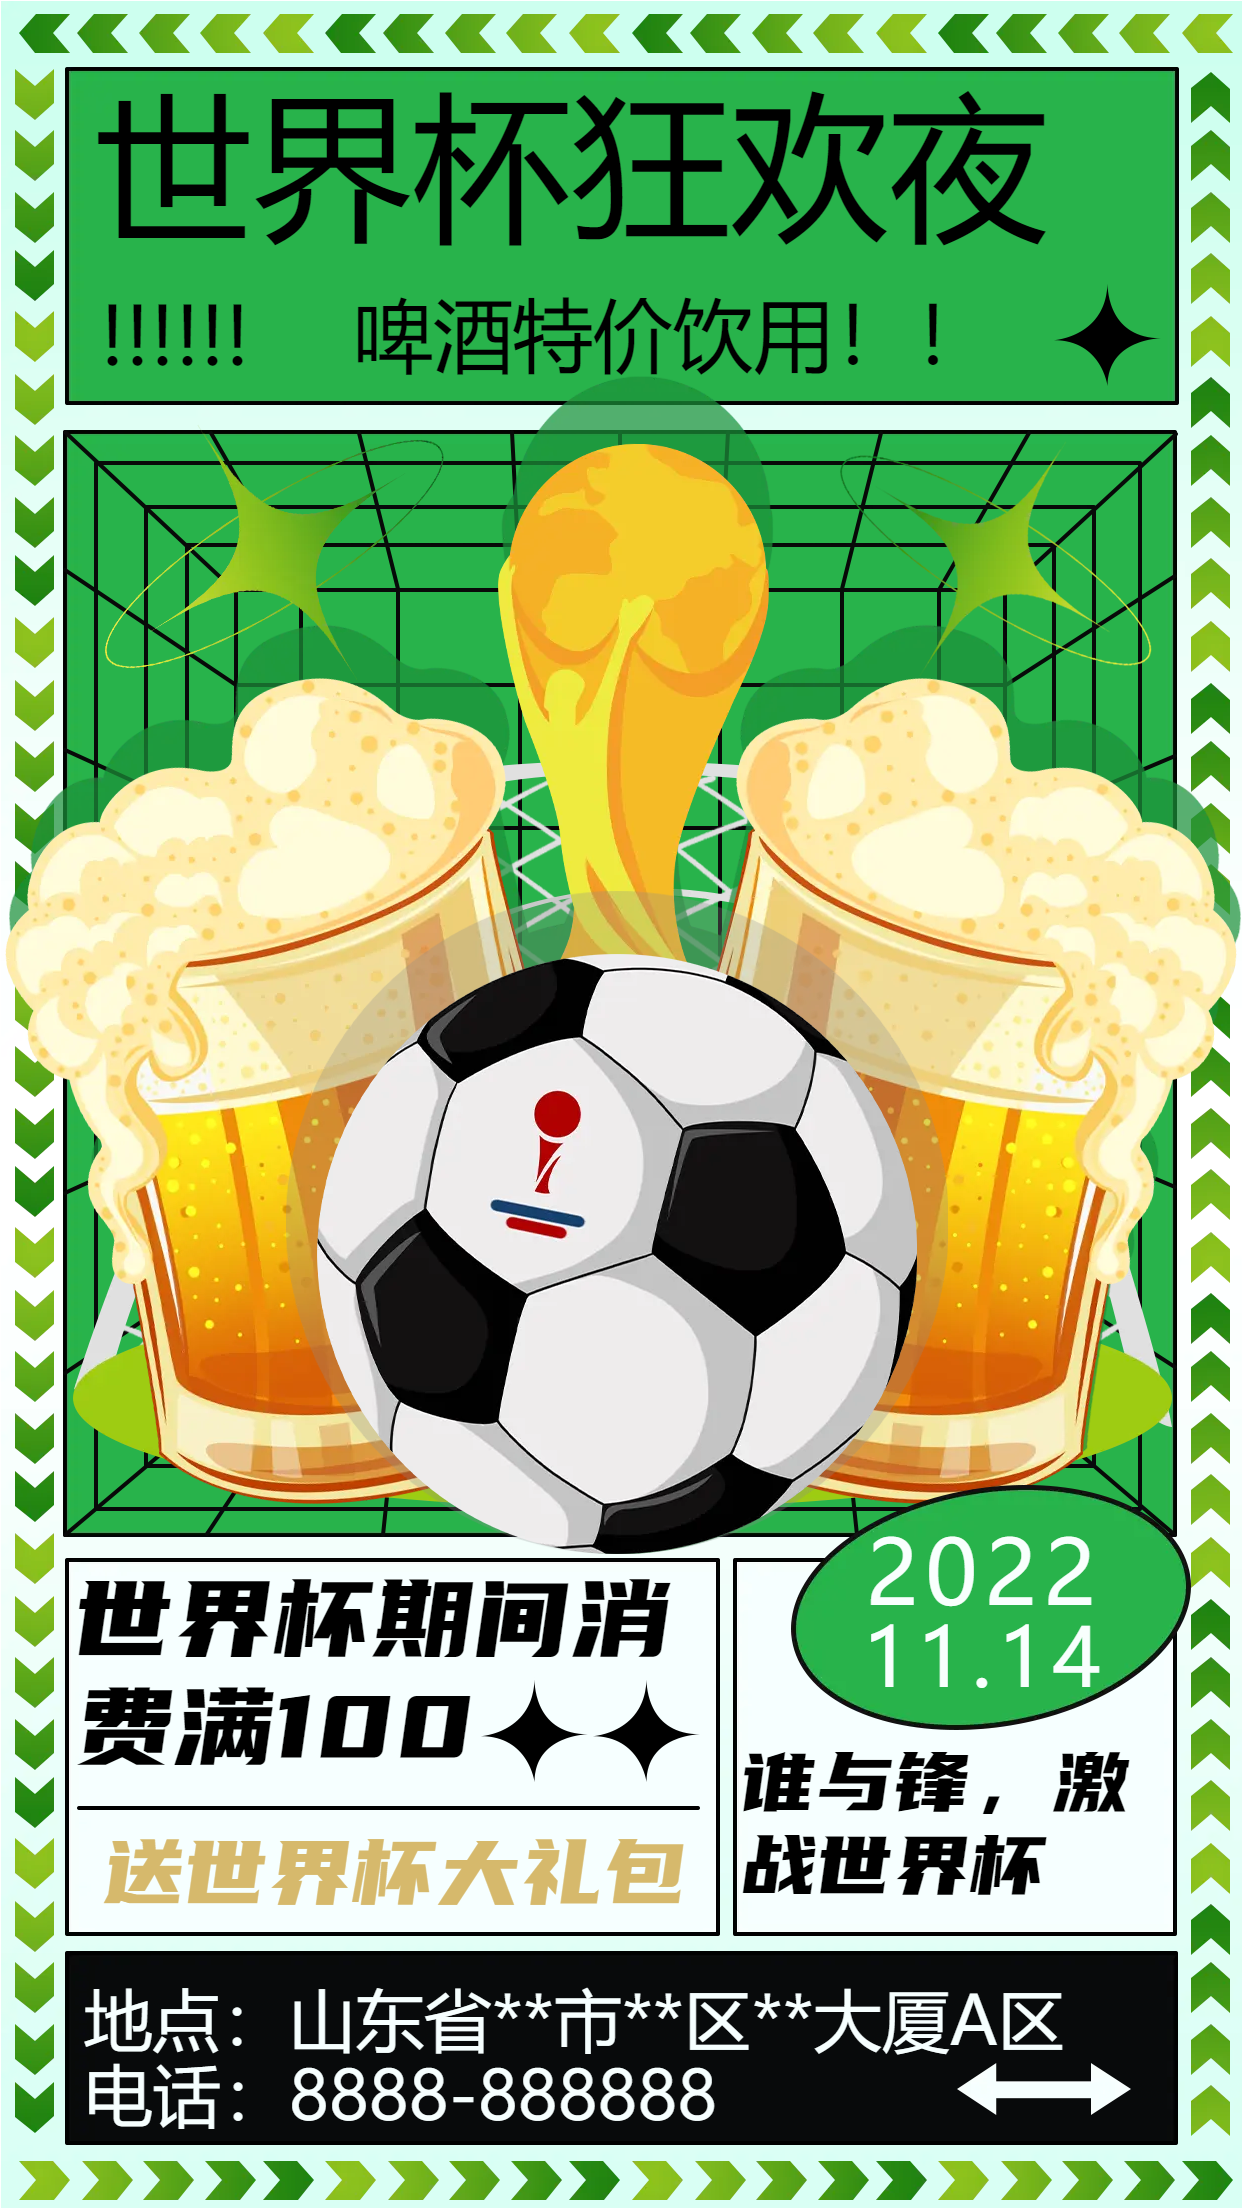 世界杯狂欢夜购物活动宣传海报